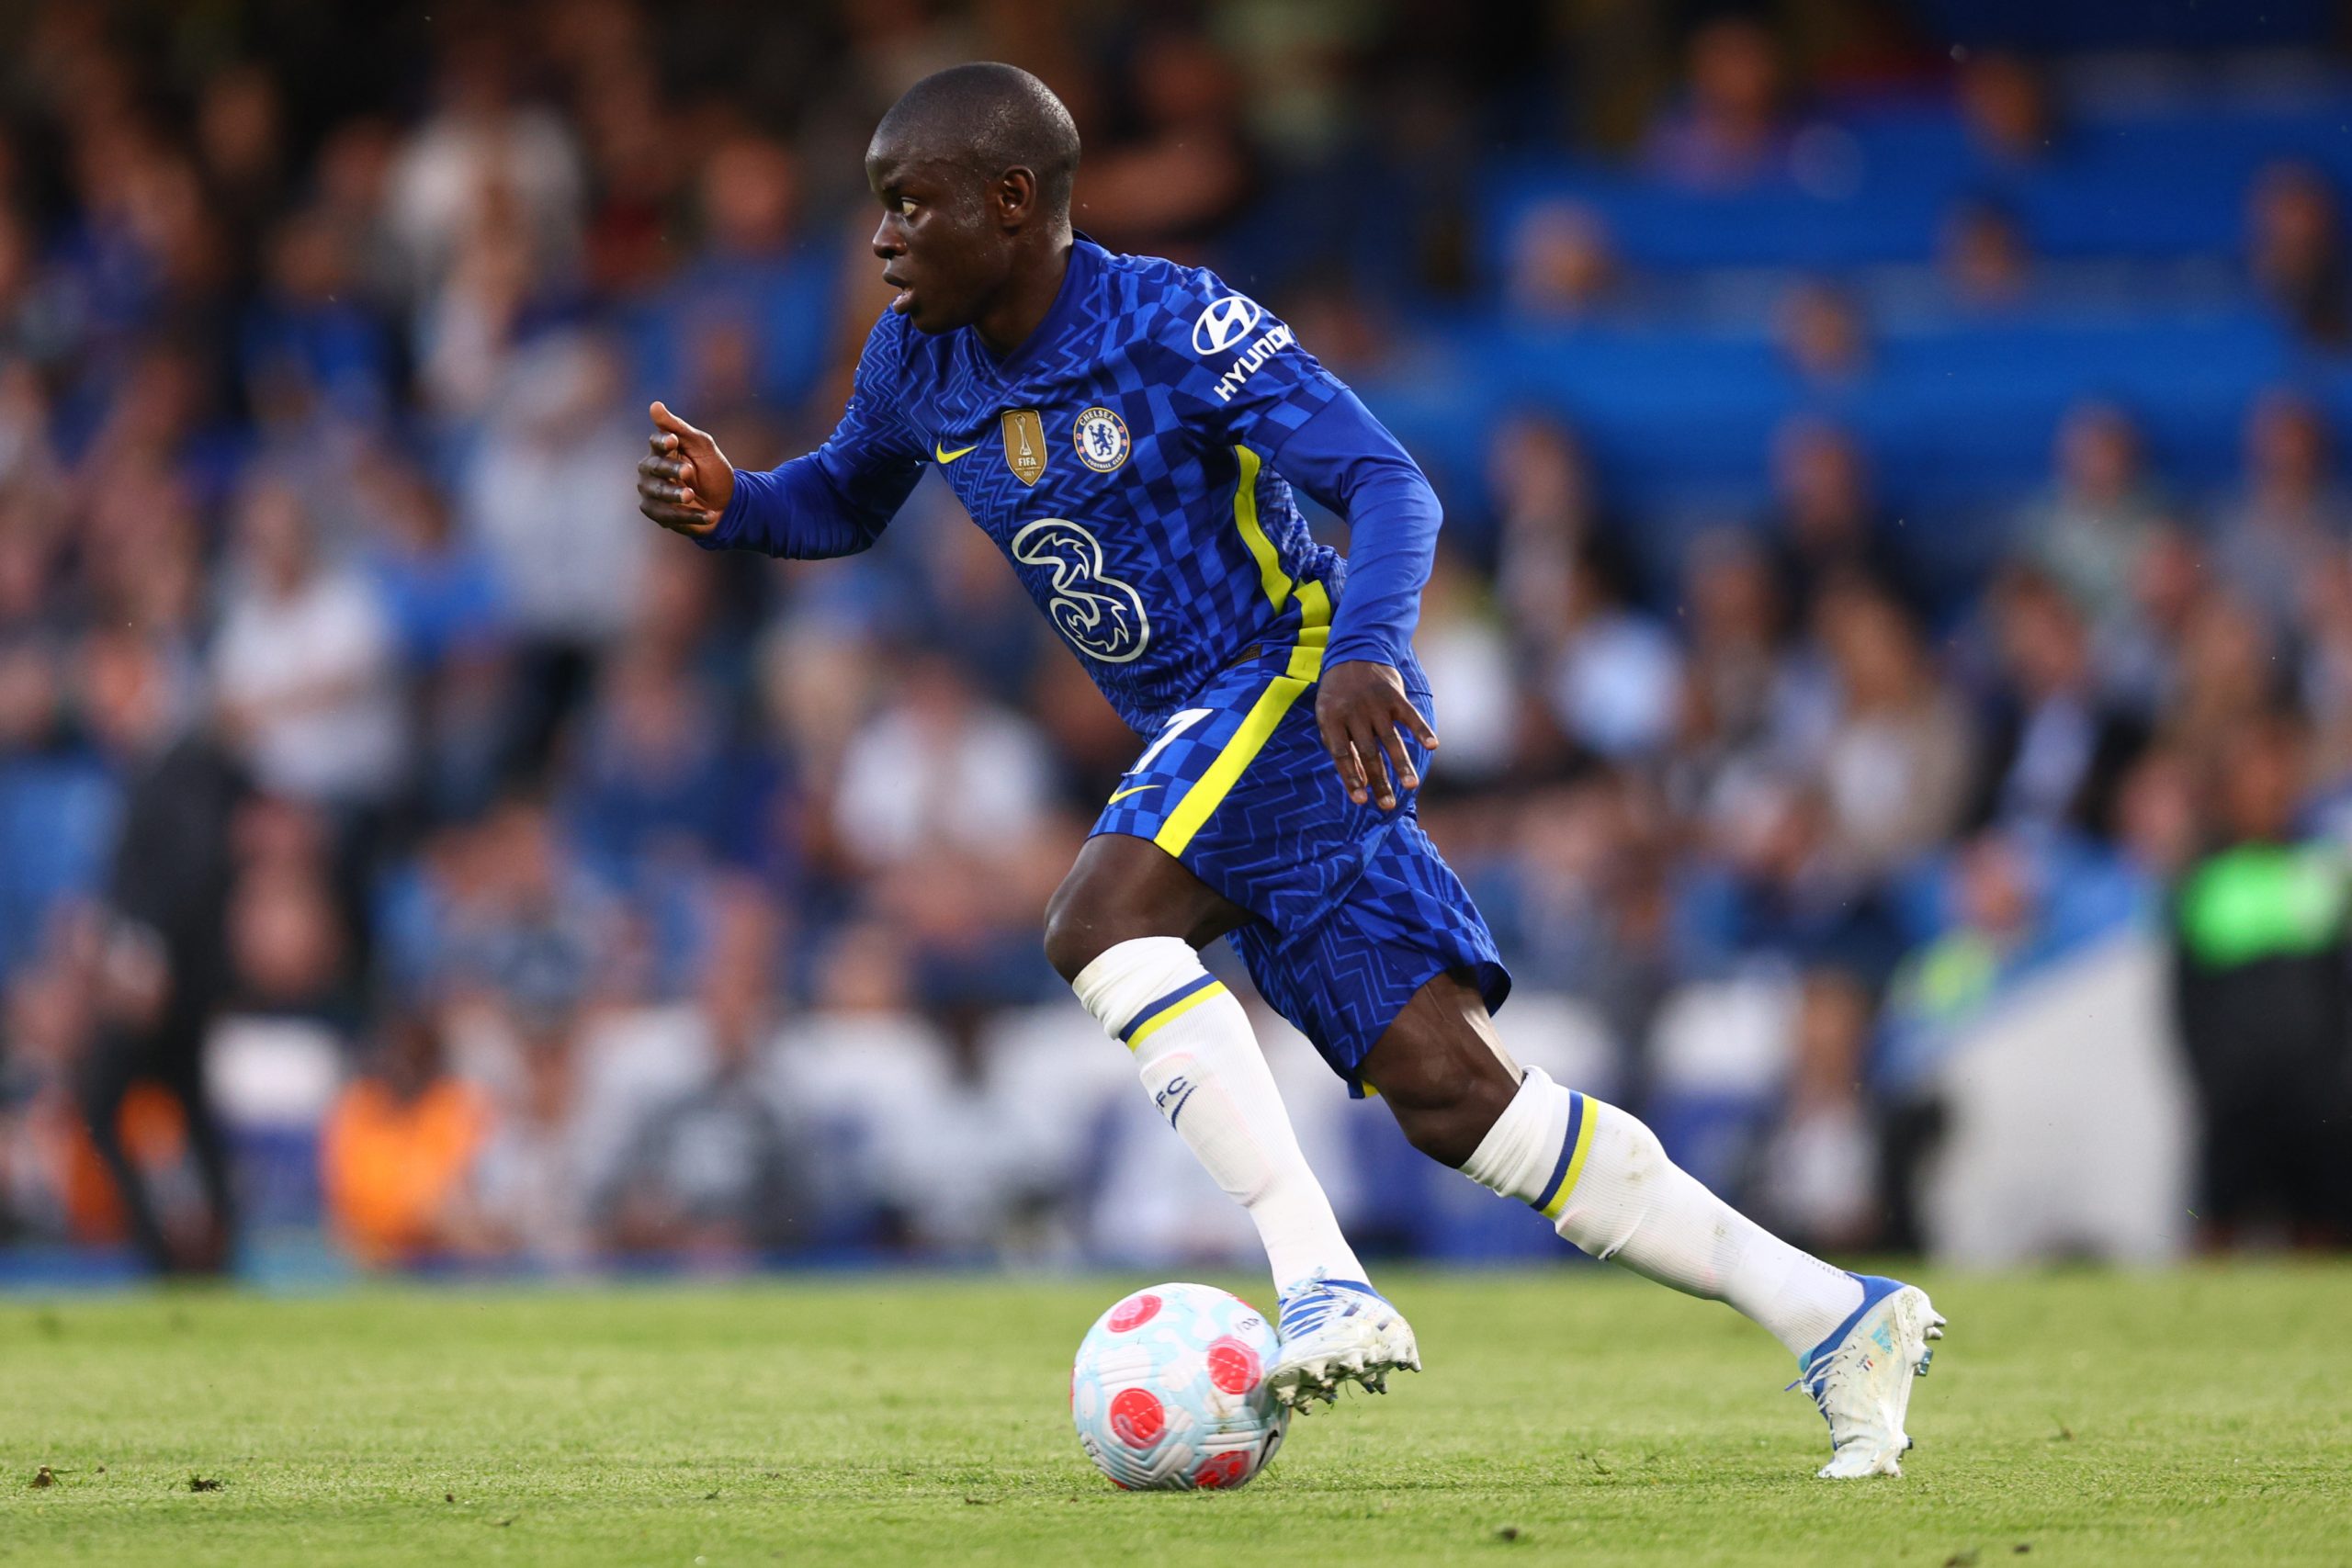 Chelsea midfielder N'Golo Kante